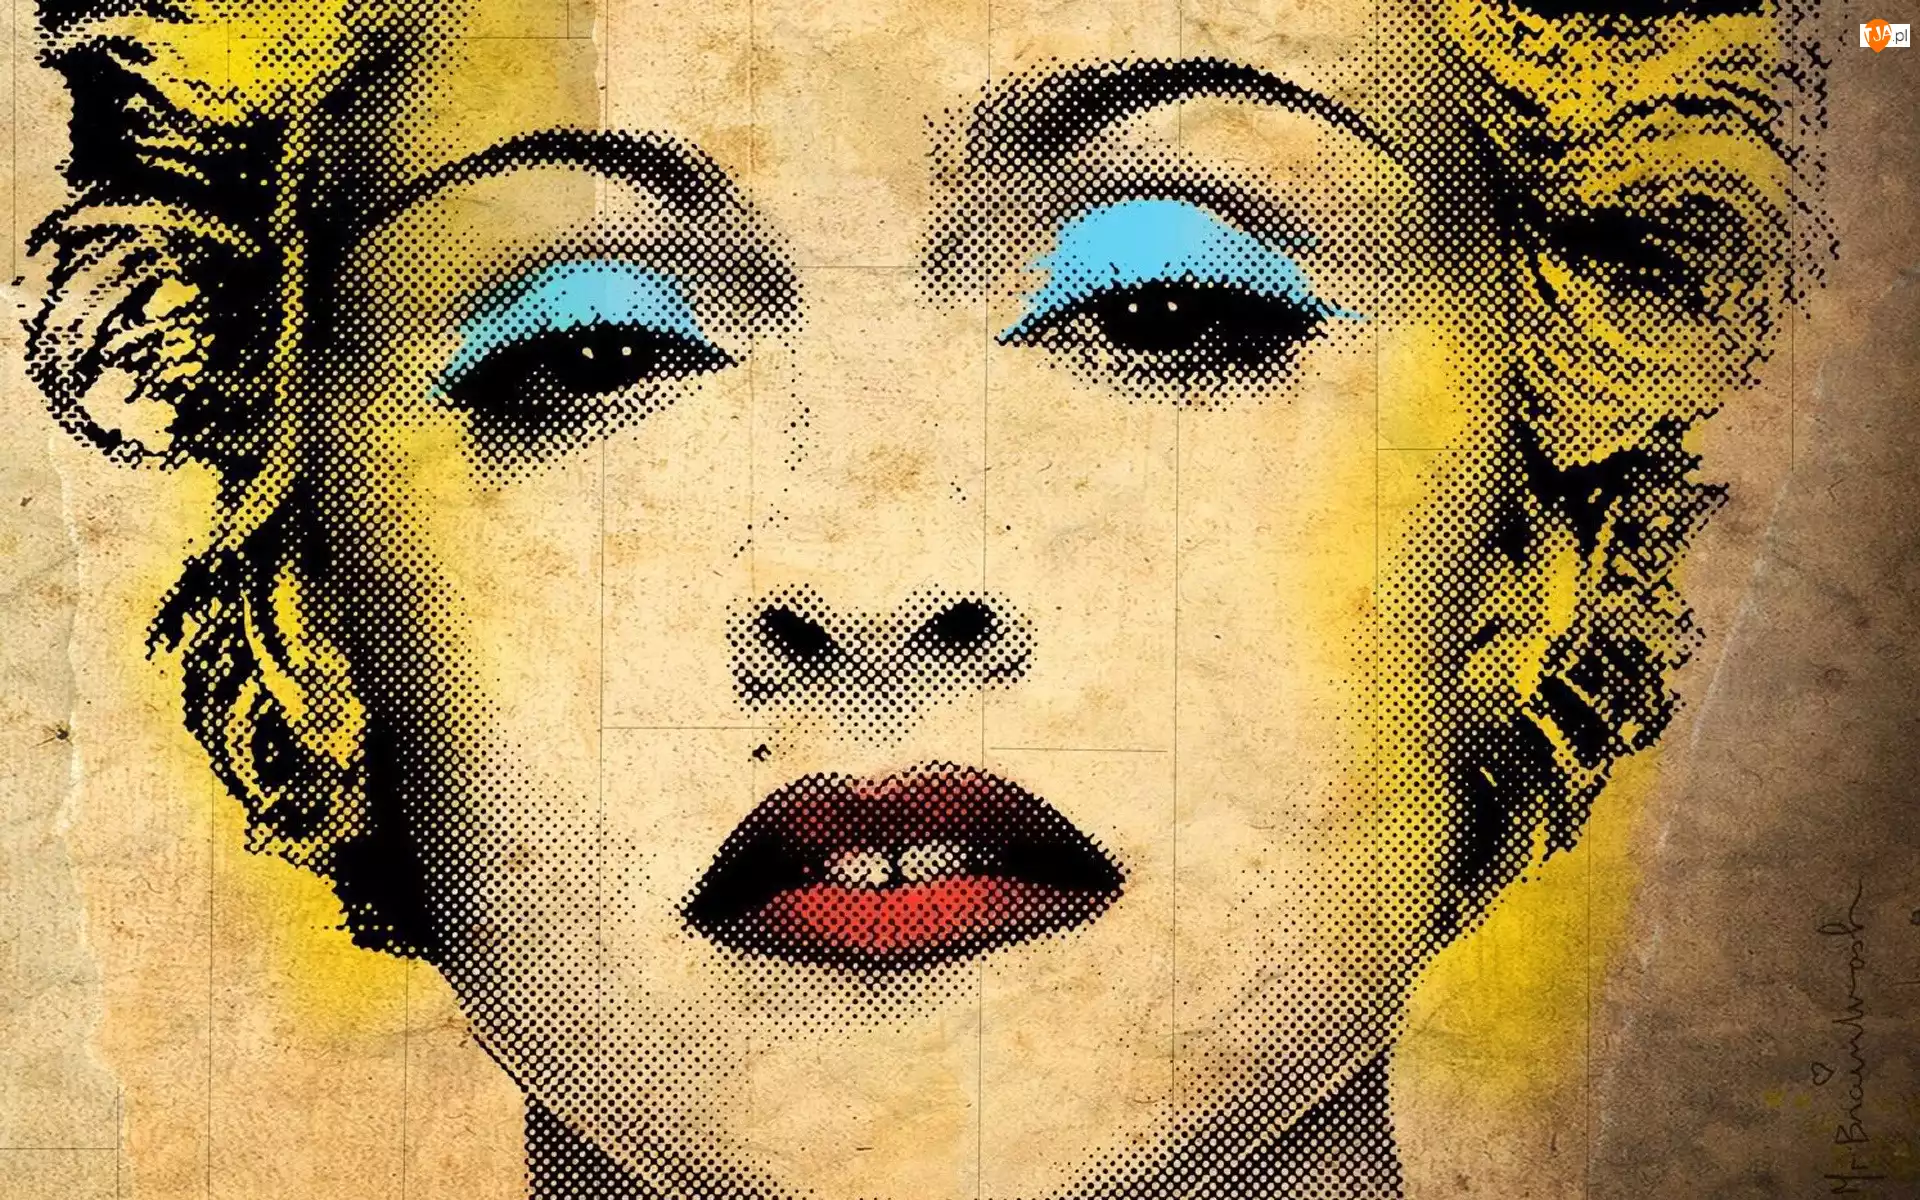 Madonna, Kobieta